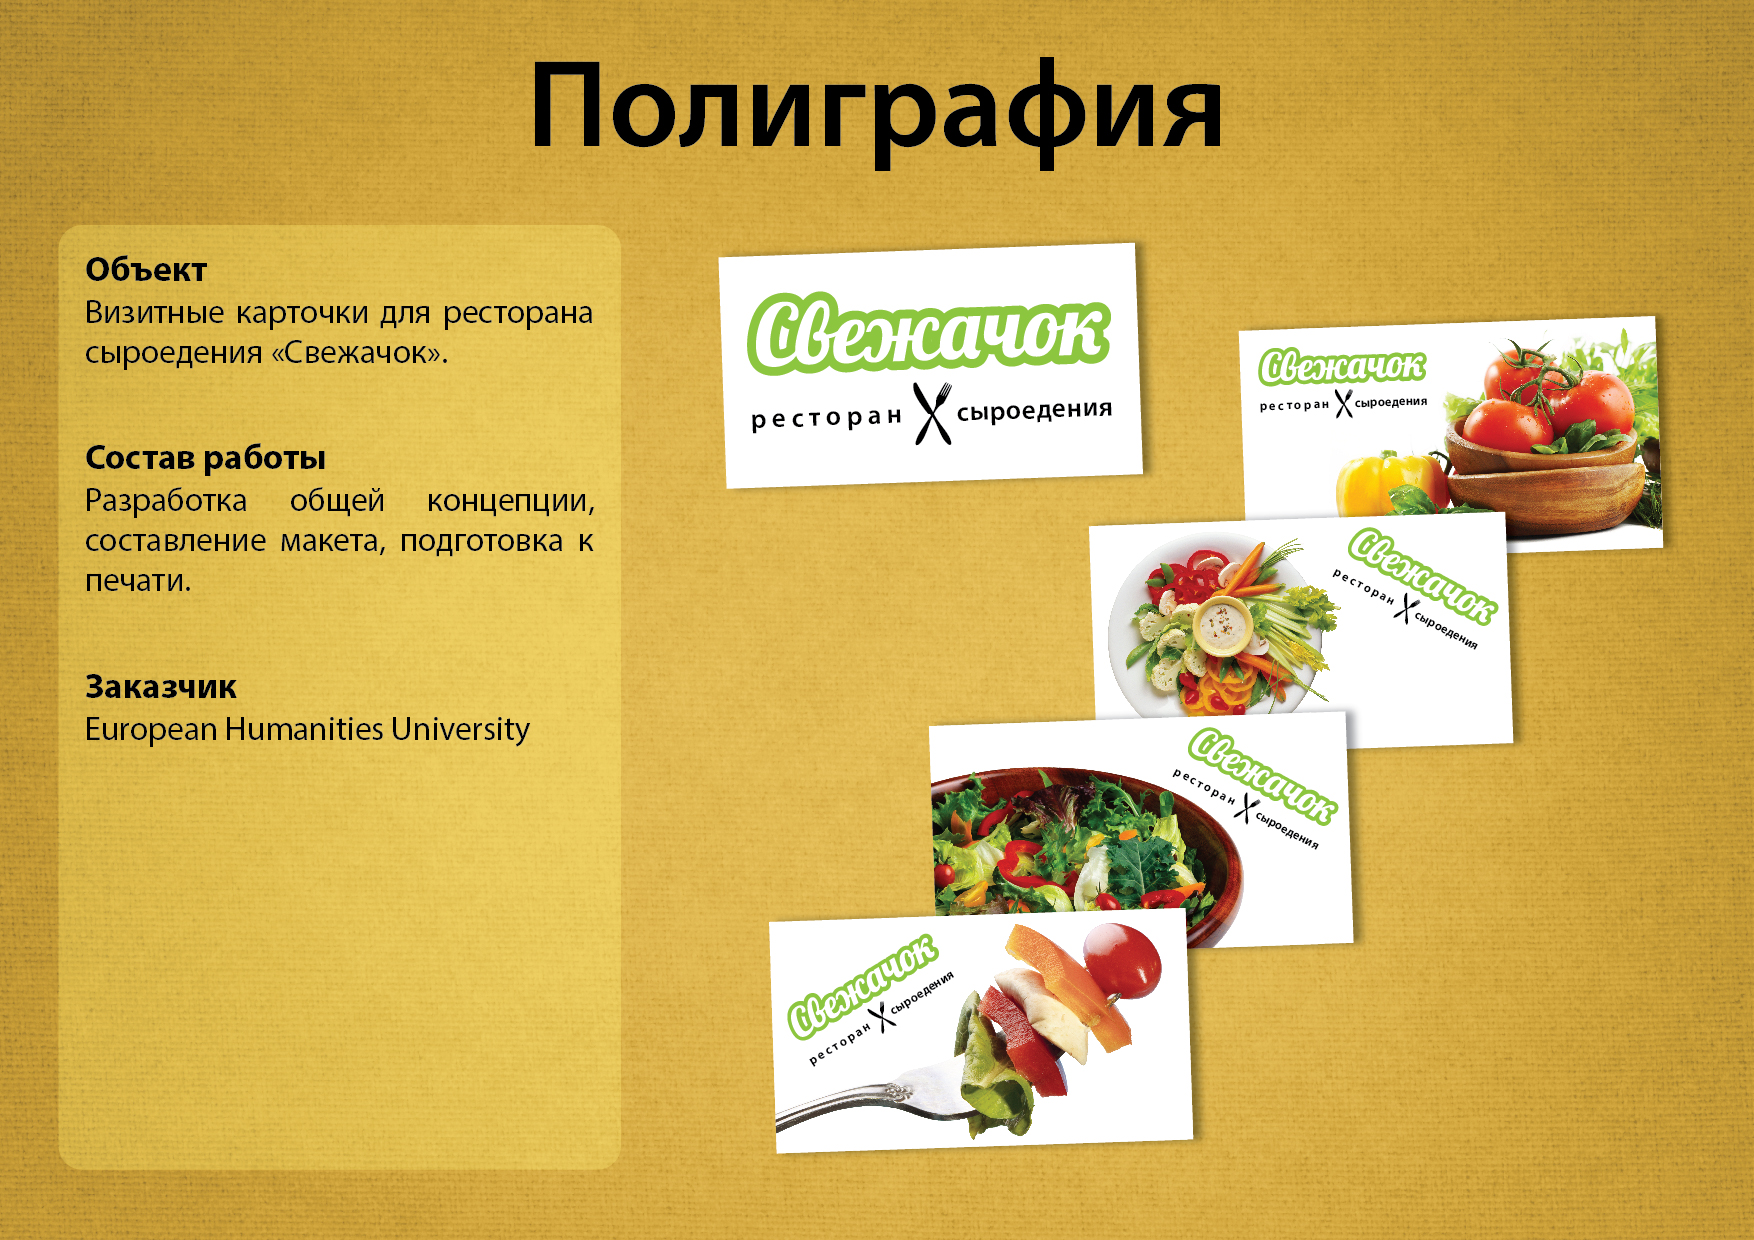 Визитные карточки для ресторана сыроедения